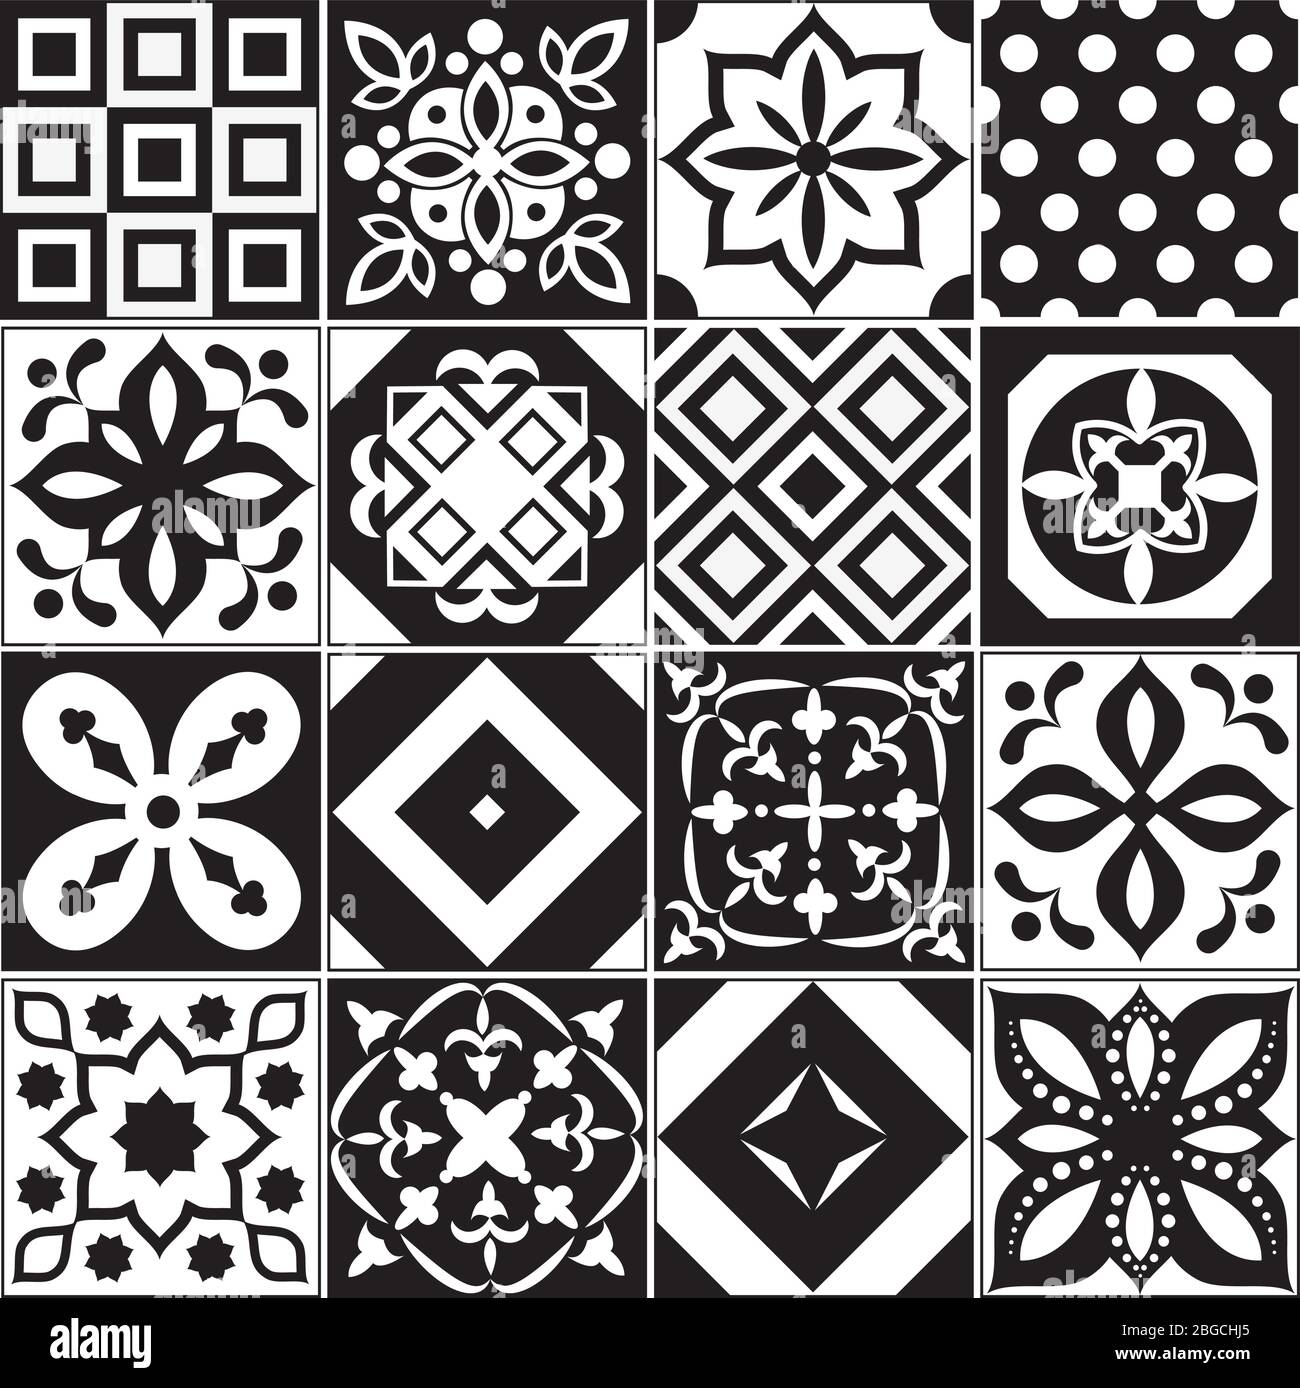 Vintage schwarz und weiß traditionelle Keramik Bodenfliesen Muster Vektor-Kollektion. Keramik Muster traditionellen Boden Hintergrund quadratische Illustration Stock Vektor